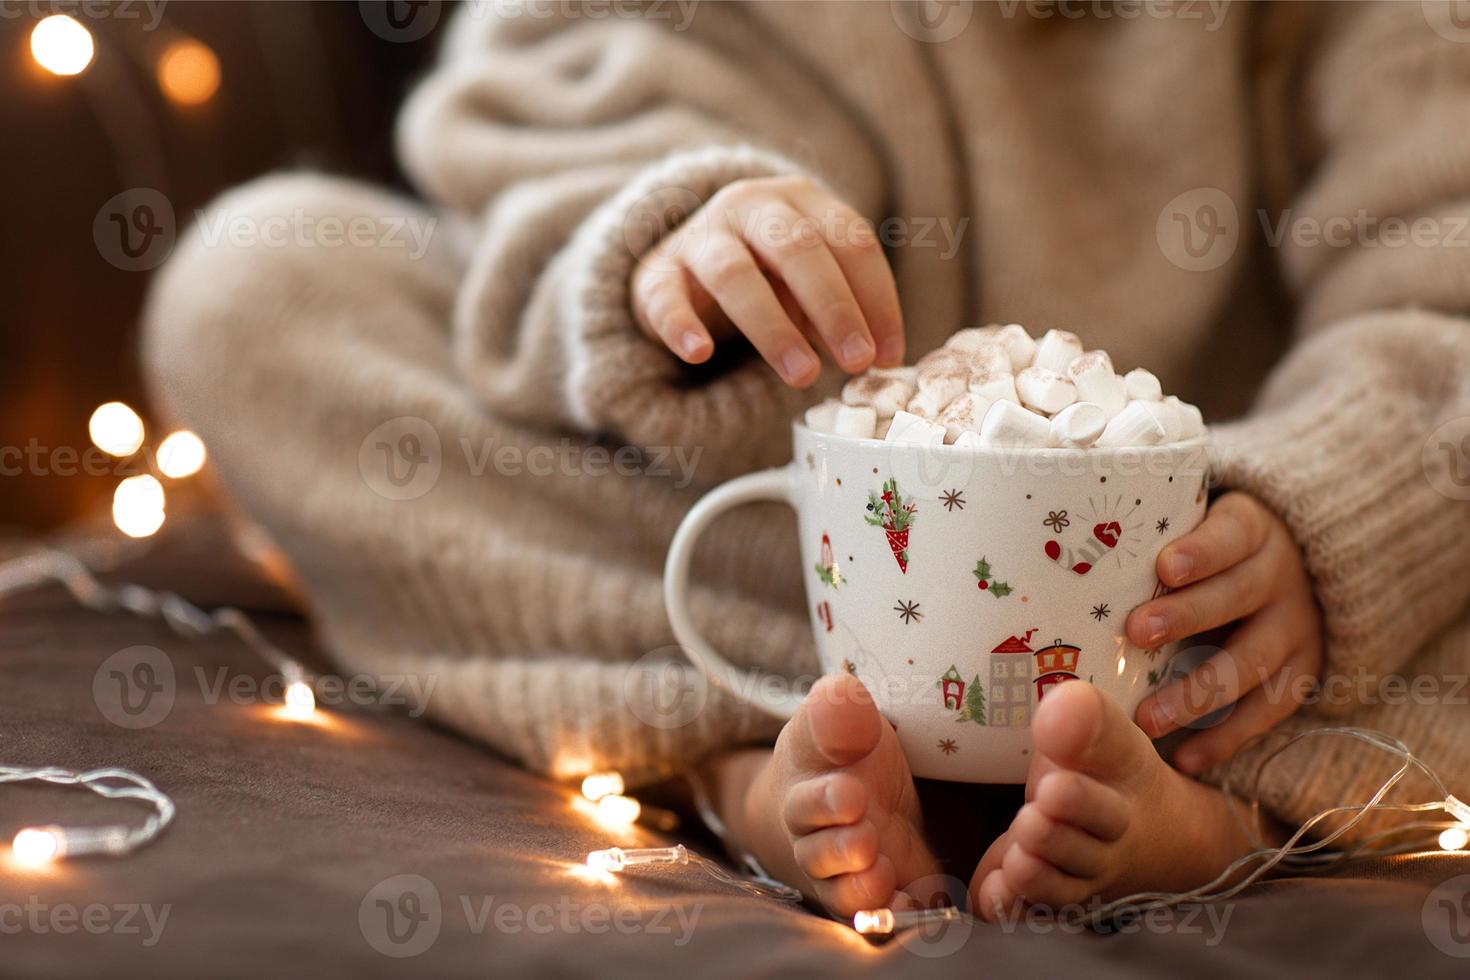 kind kaal voeten en handen houden kop heet cacao marshmallows dichtbij omhoog slinger lichten.flaffy wazig warm gebreid beige trui. Kerstmis concept, vakantie.blij nieuw jaar.kind meisje zittend Aan sofa huis foto